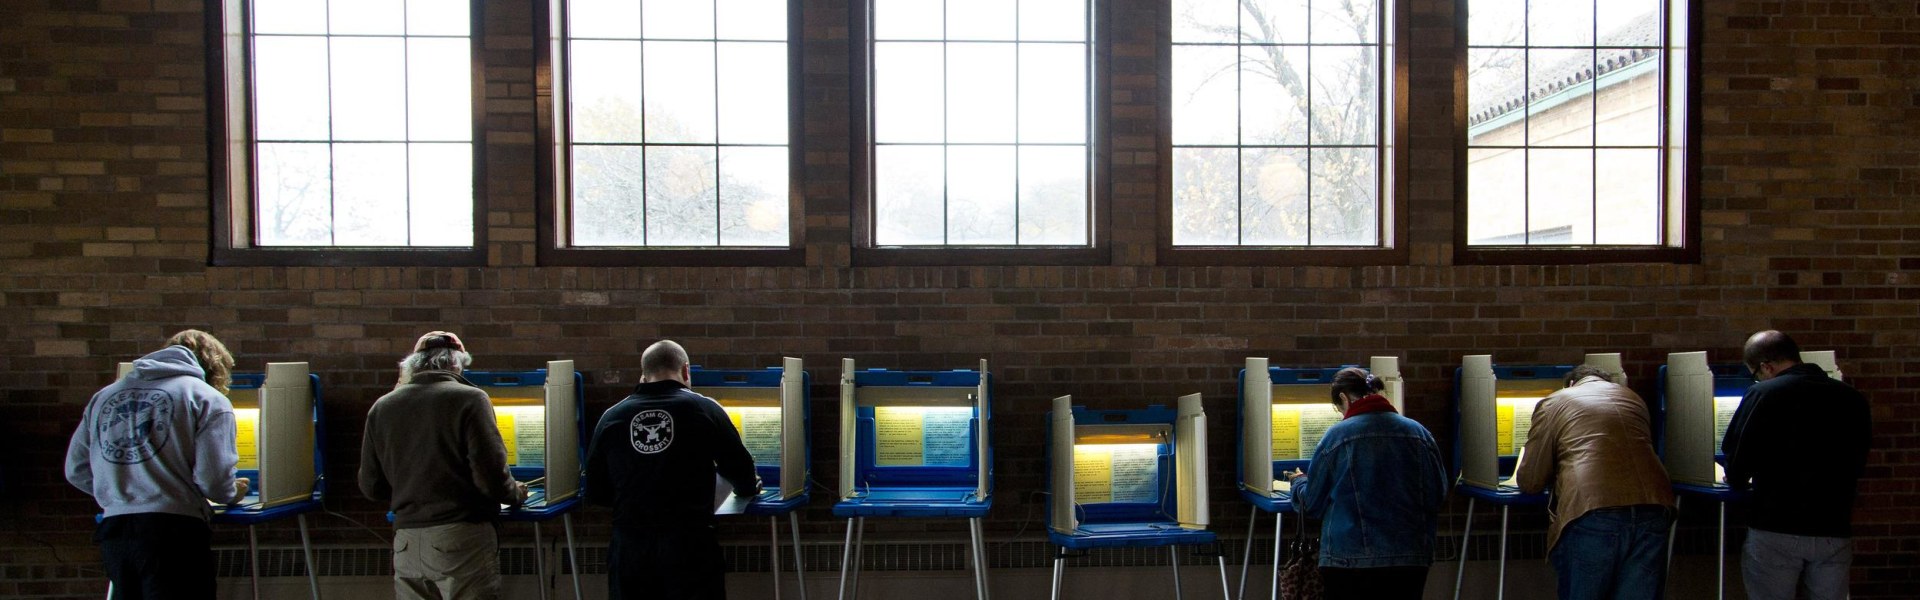 Image: BESTPIX Midterms Elections Held Across The U.S.